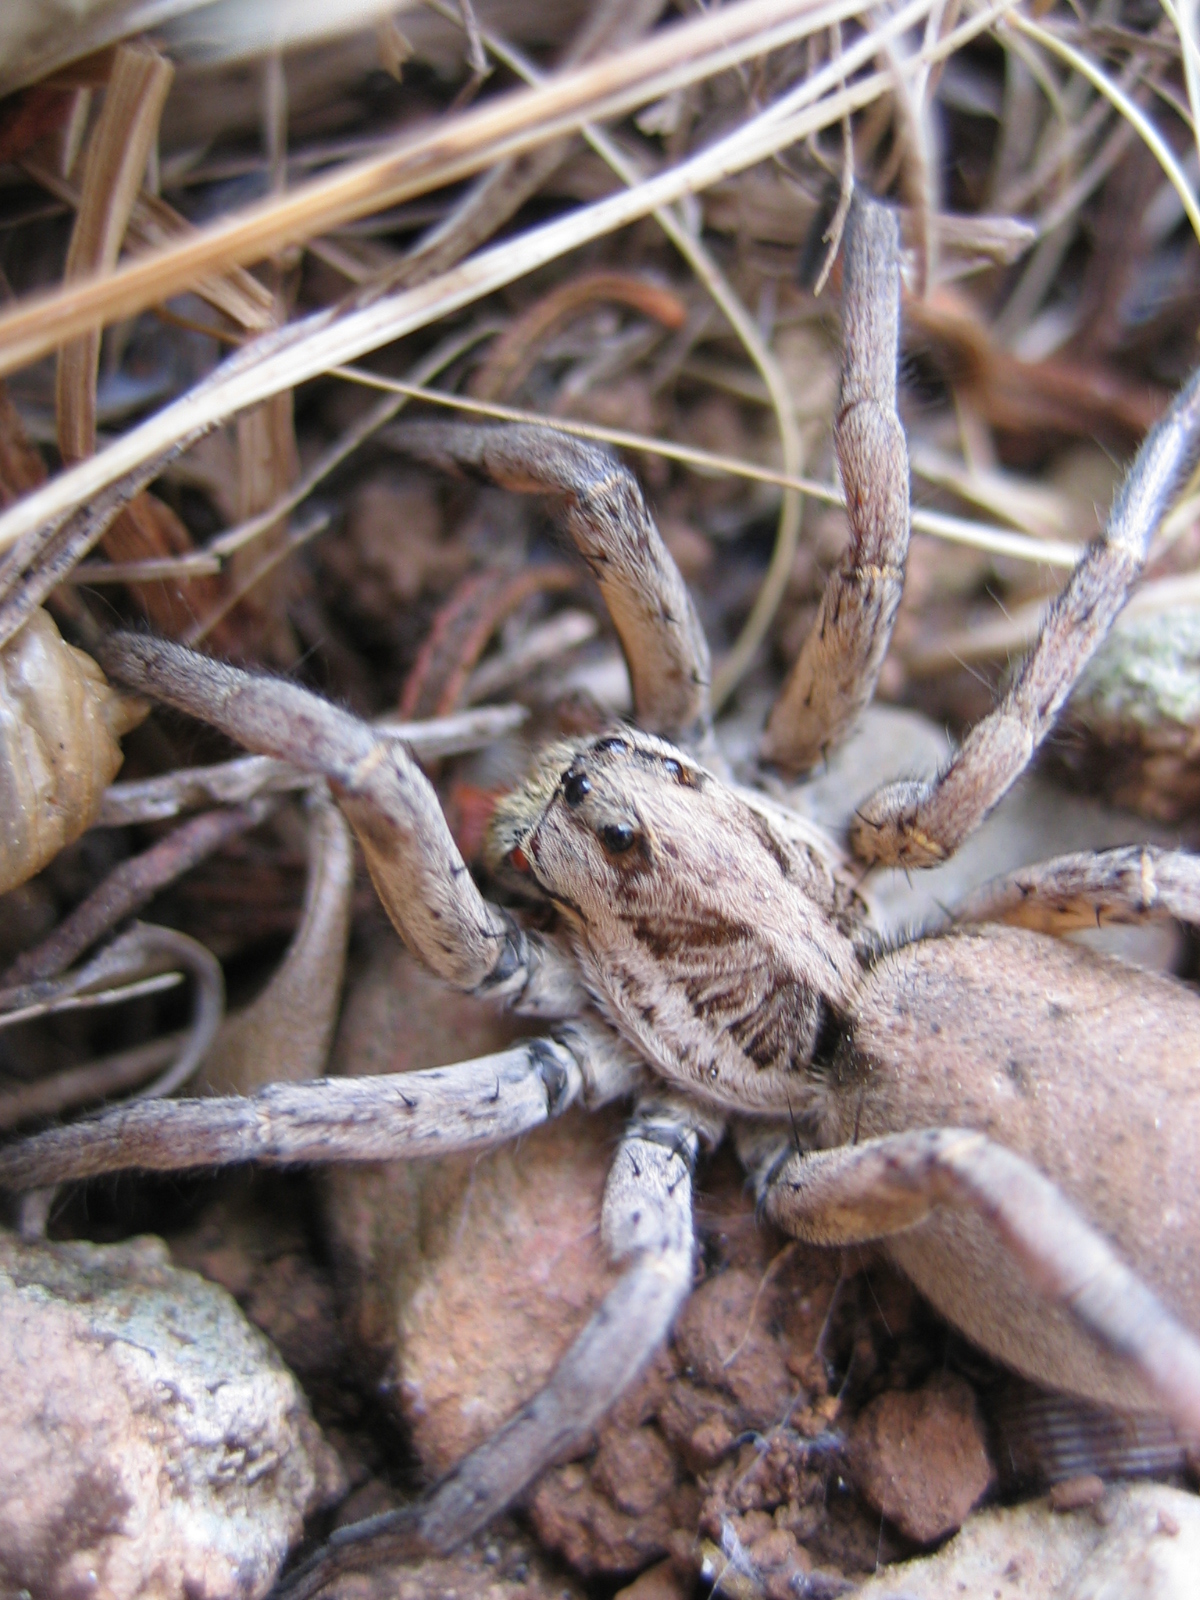 Tarantula Apulian (Lycosa tarantula)